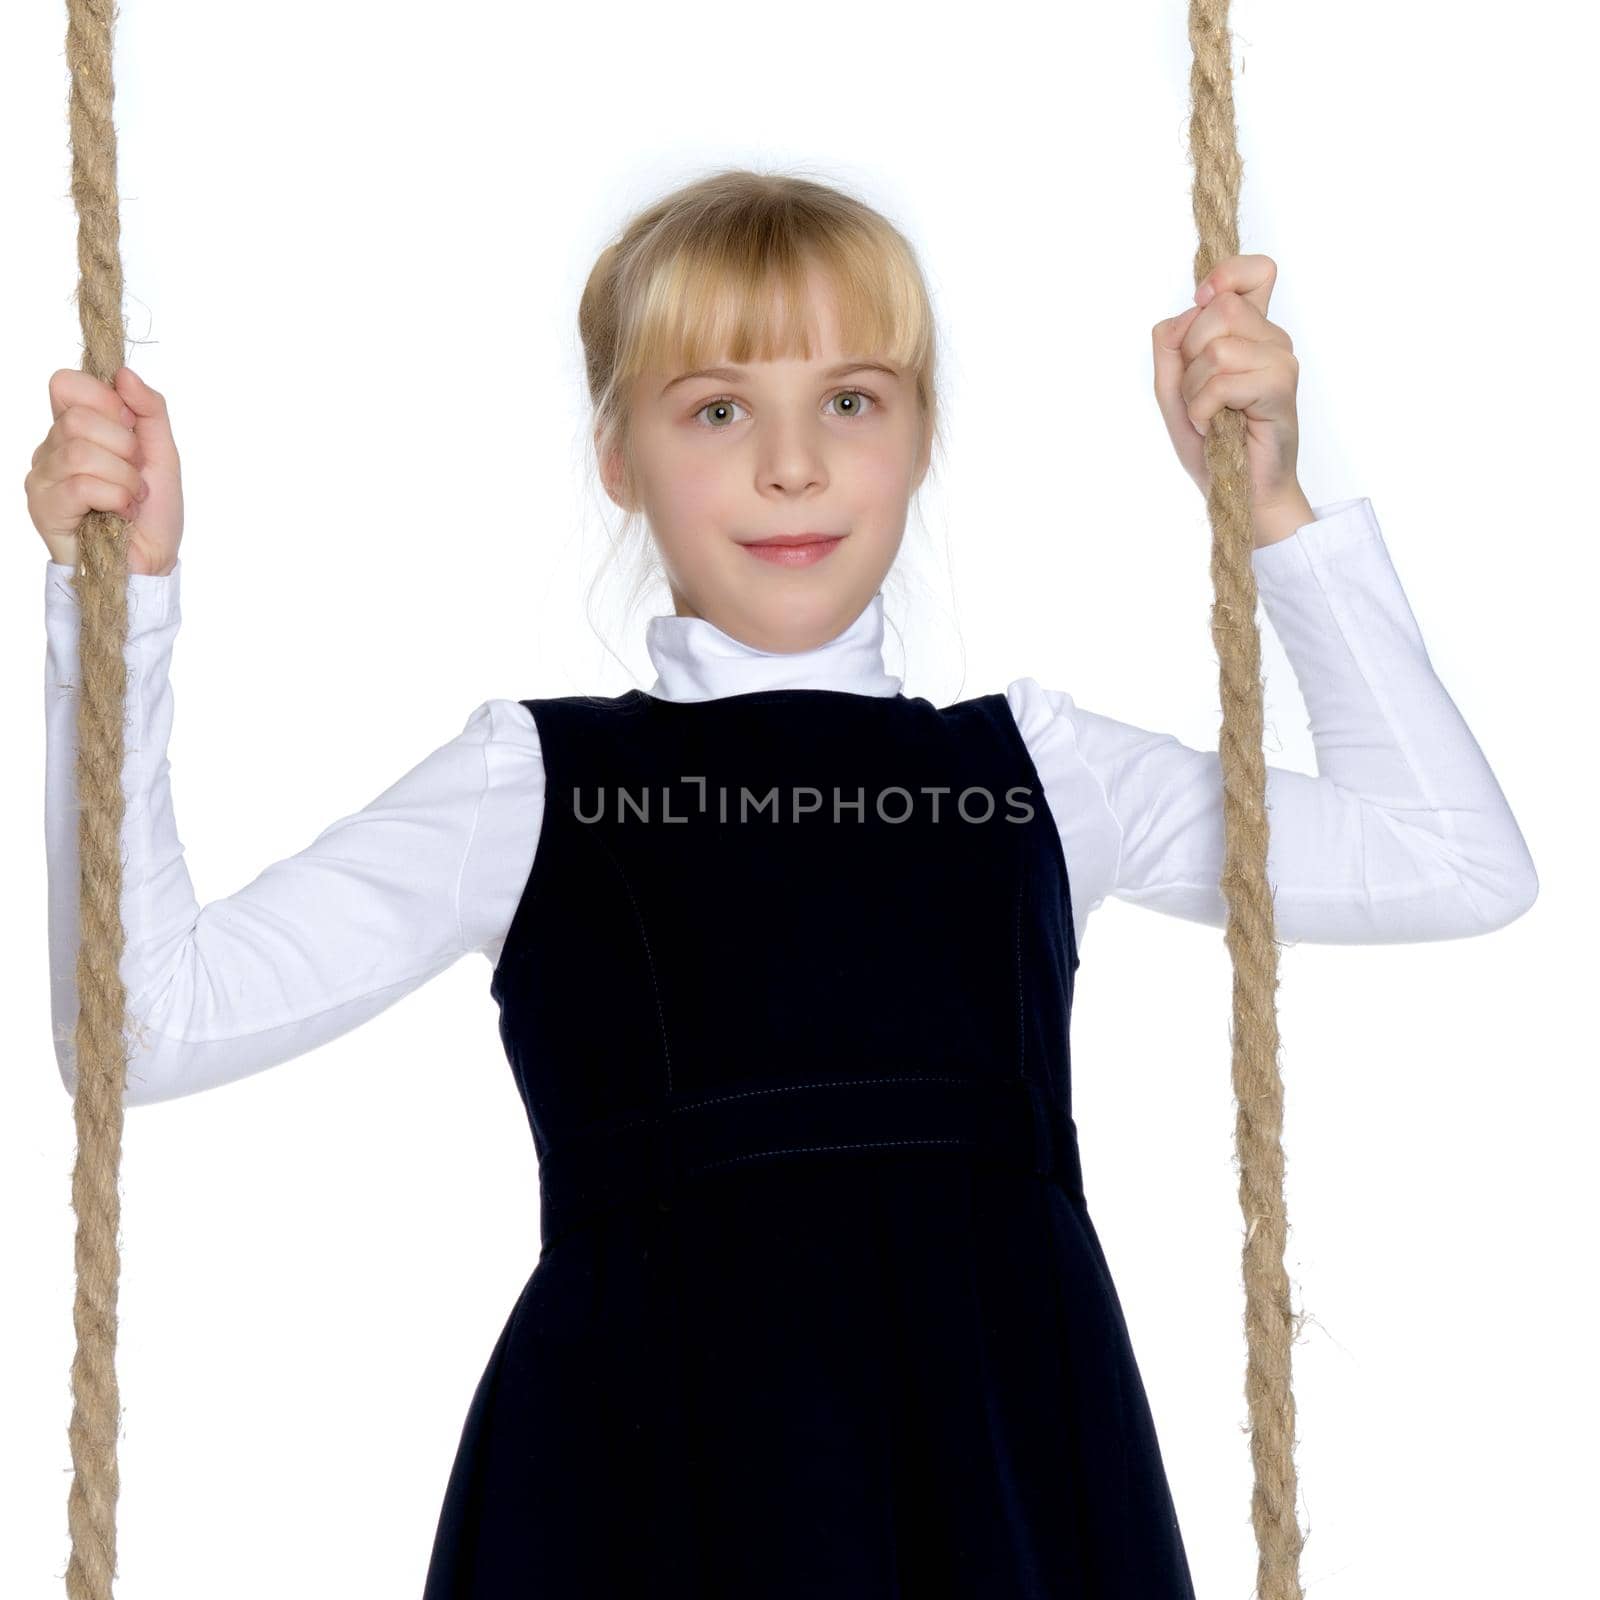 Little girl swinging on a swing by kolesnikov_studio